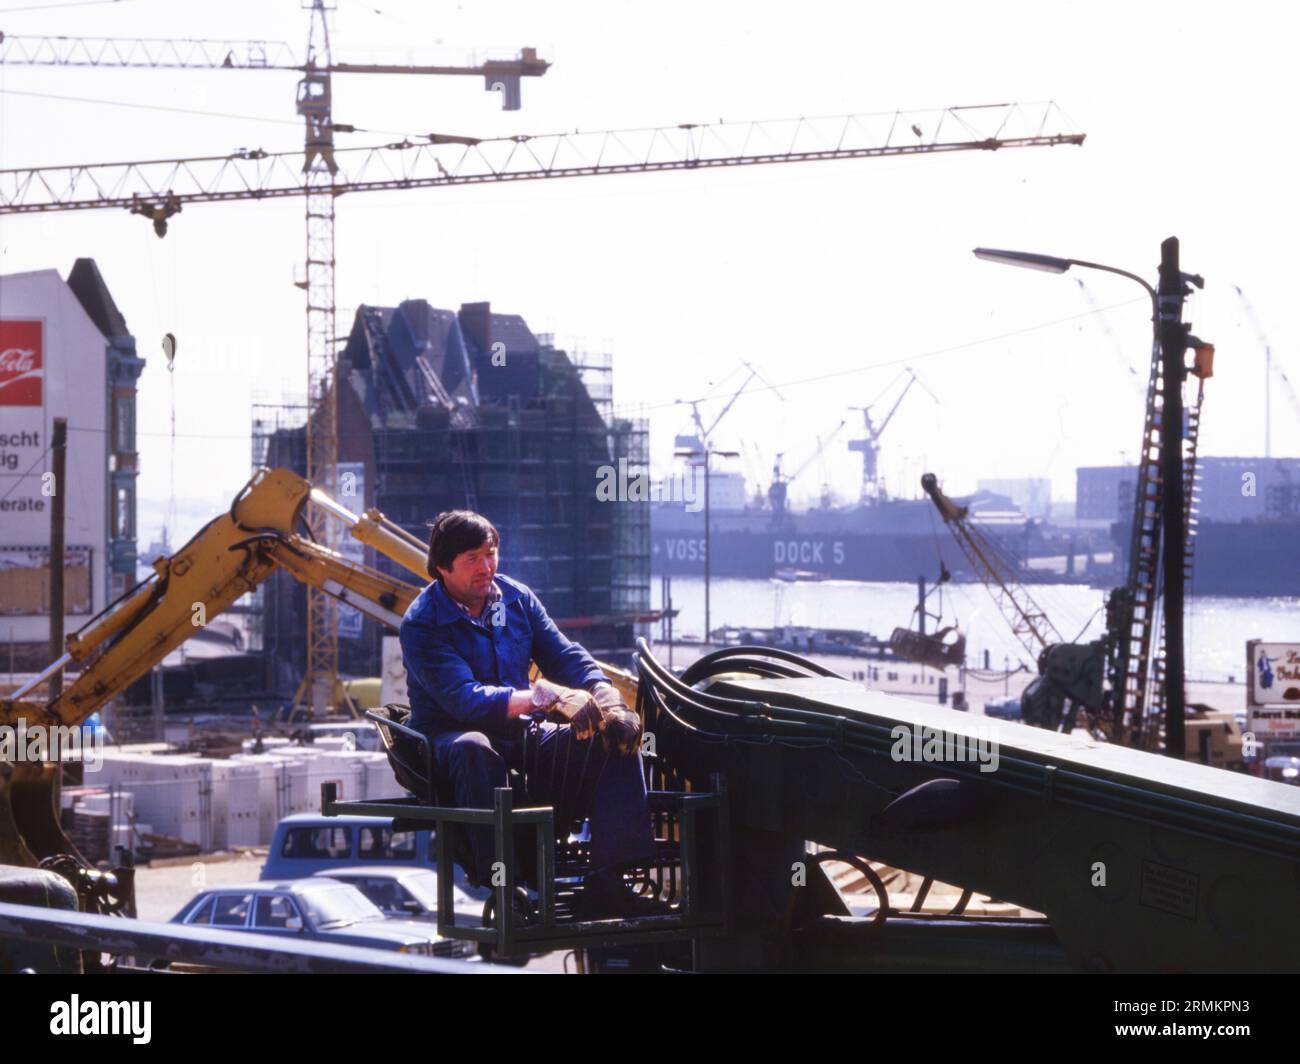 DEU, Germania: Le diapositive storiche dei tempi 80-90, Amburgo. Porta. Lavoro. anni '80 Foto Stock